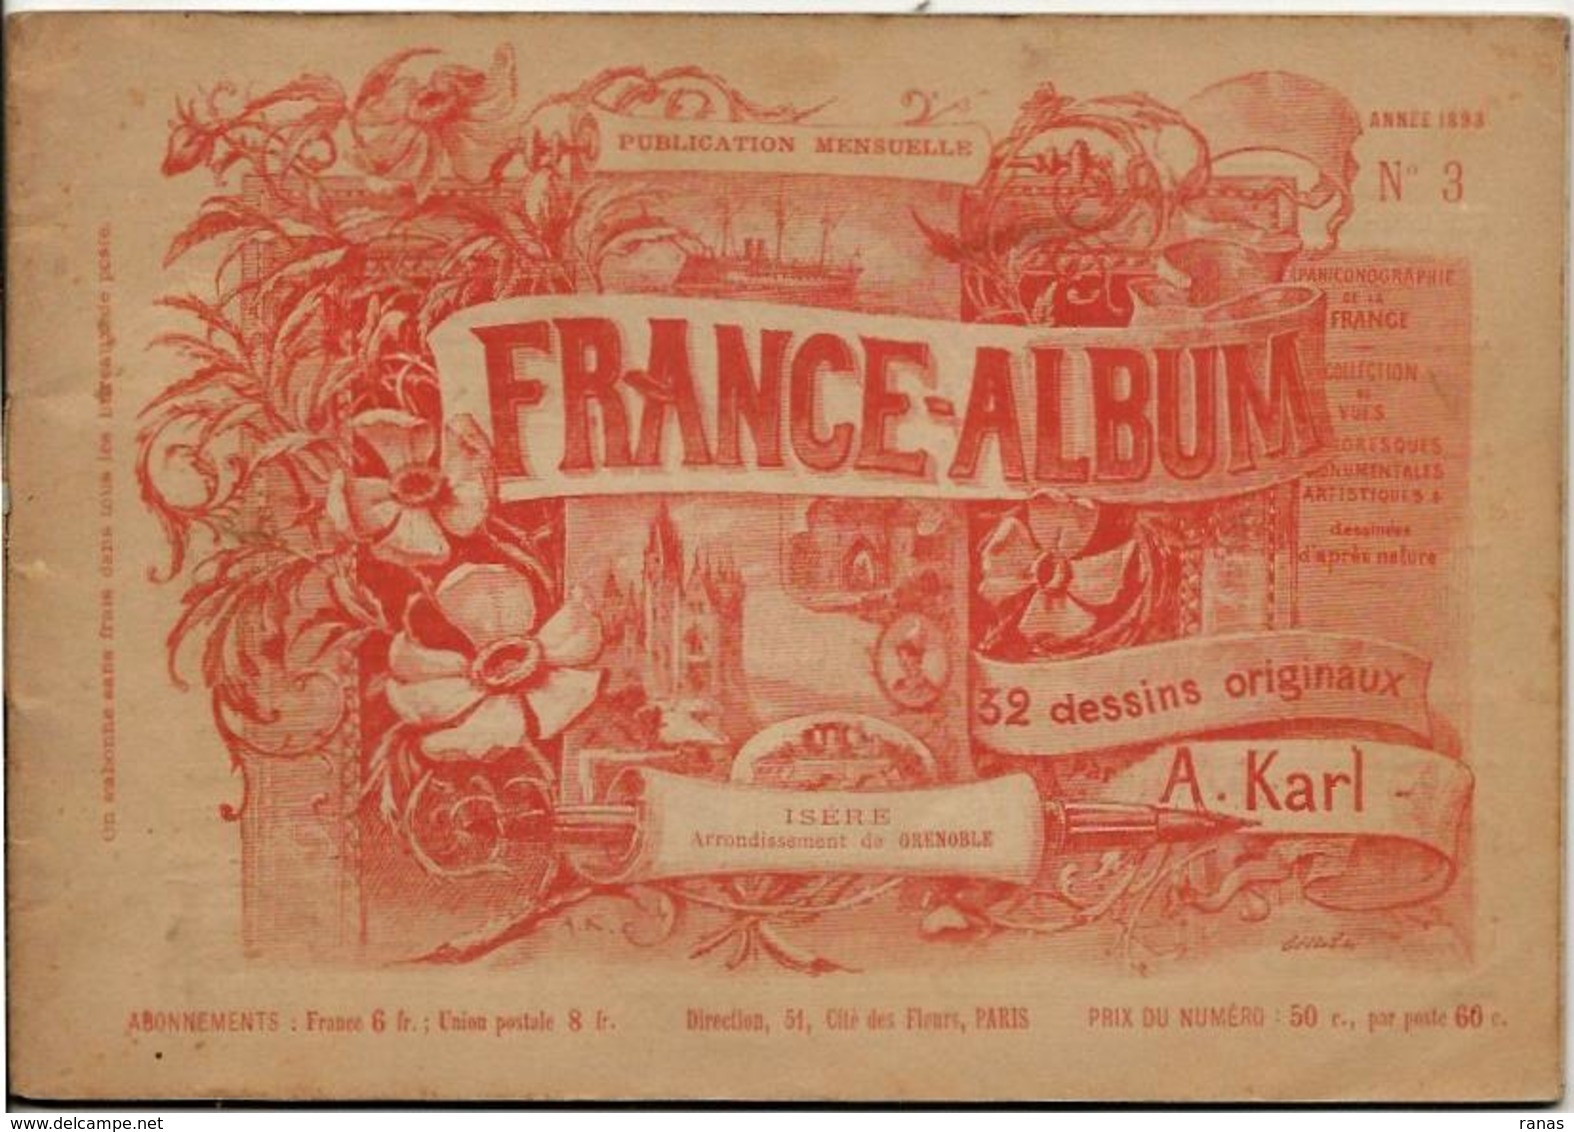 Isère 38 France Album De A. KARL, Carte Gravures Texte Publicités 1893 - Tourism Brochures